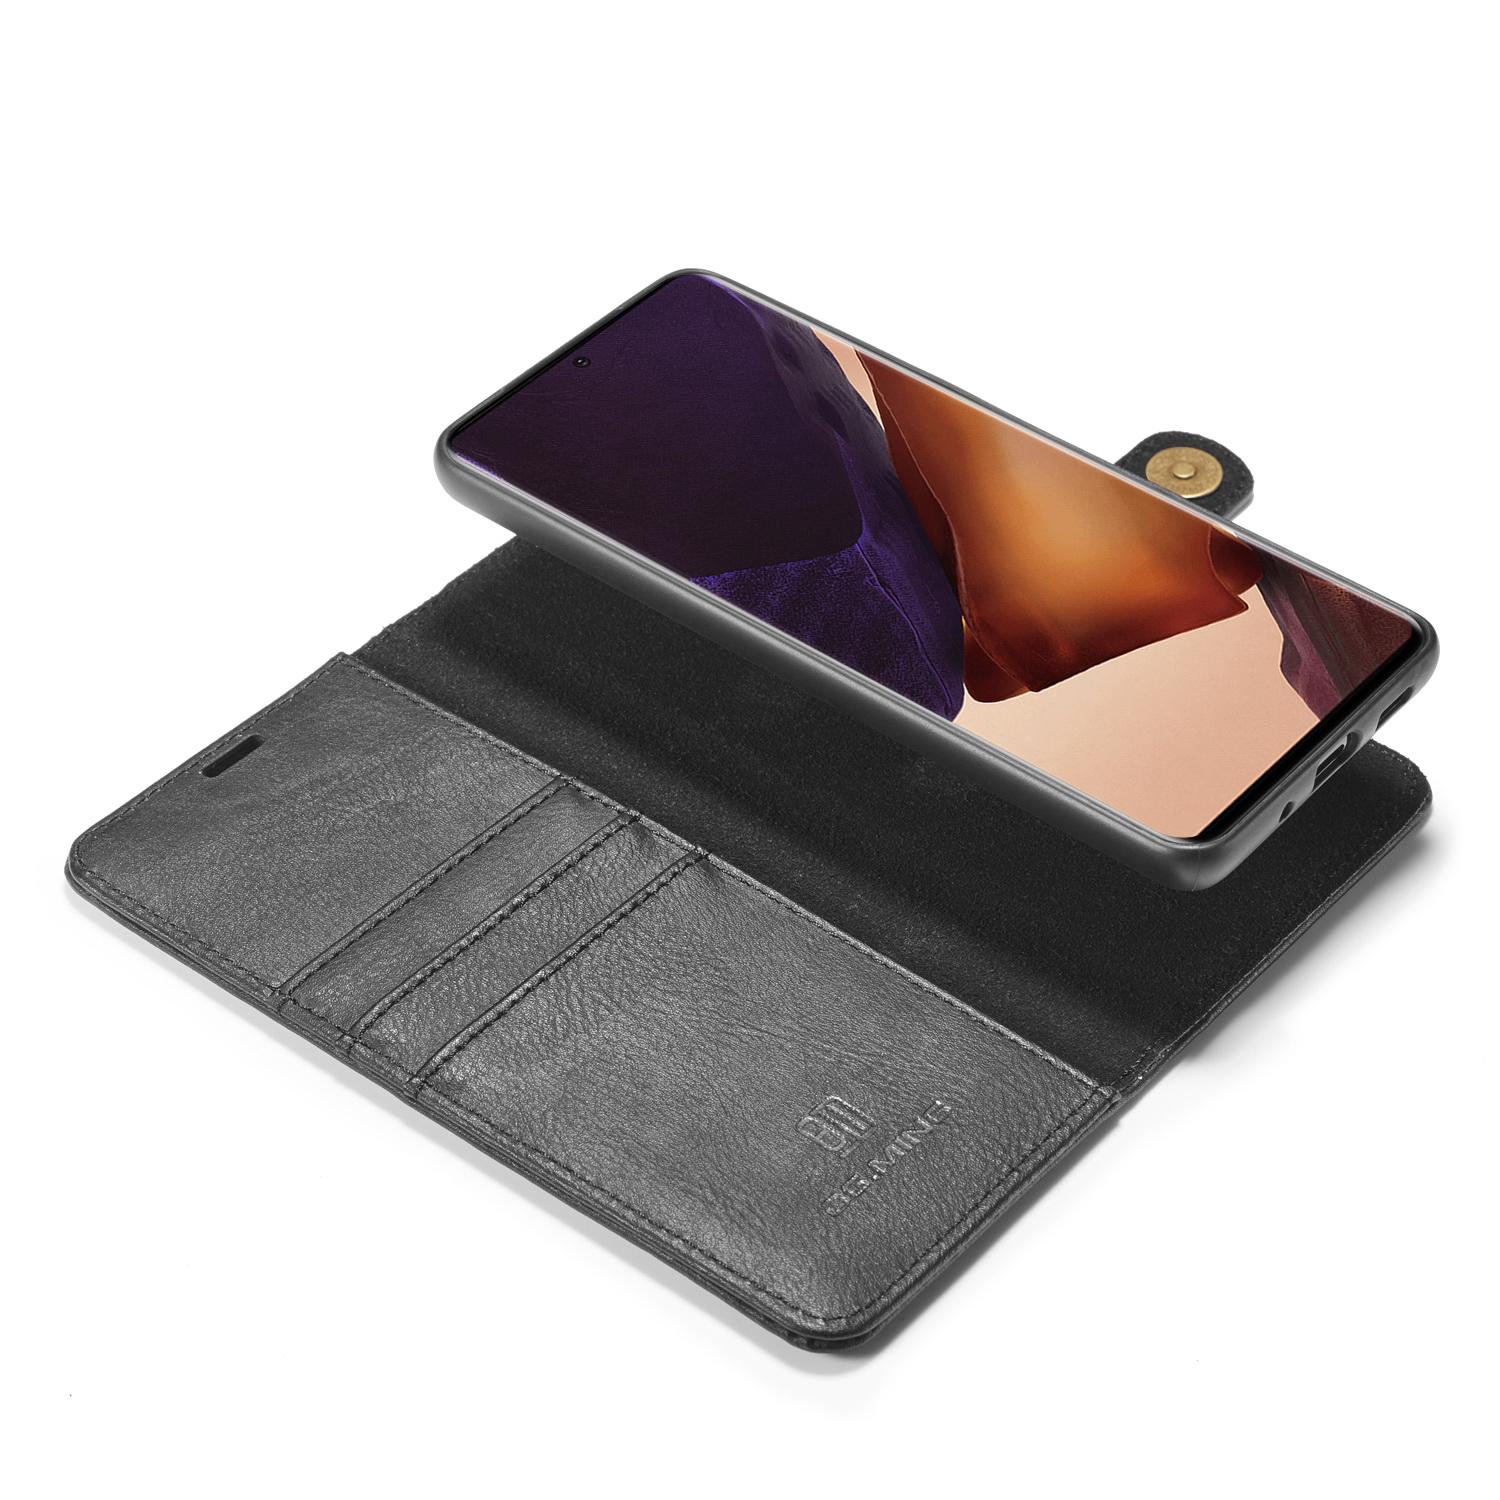 Galaxy Note 20 Ultra Plånboksfodral med avtagbart skal, svart